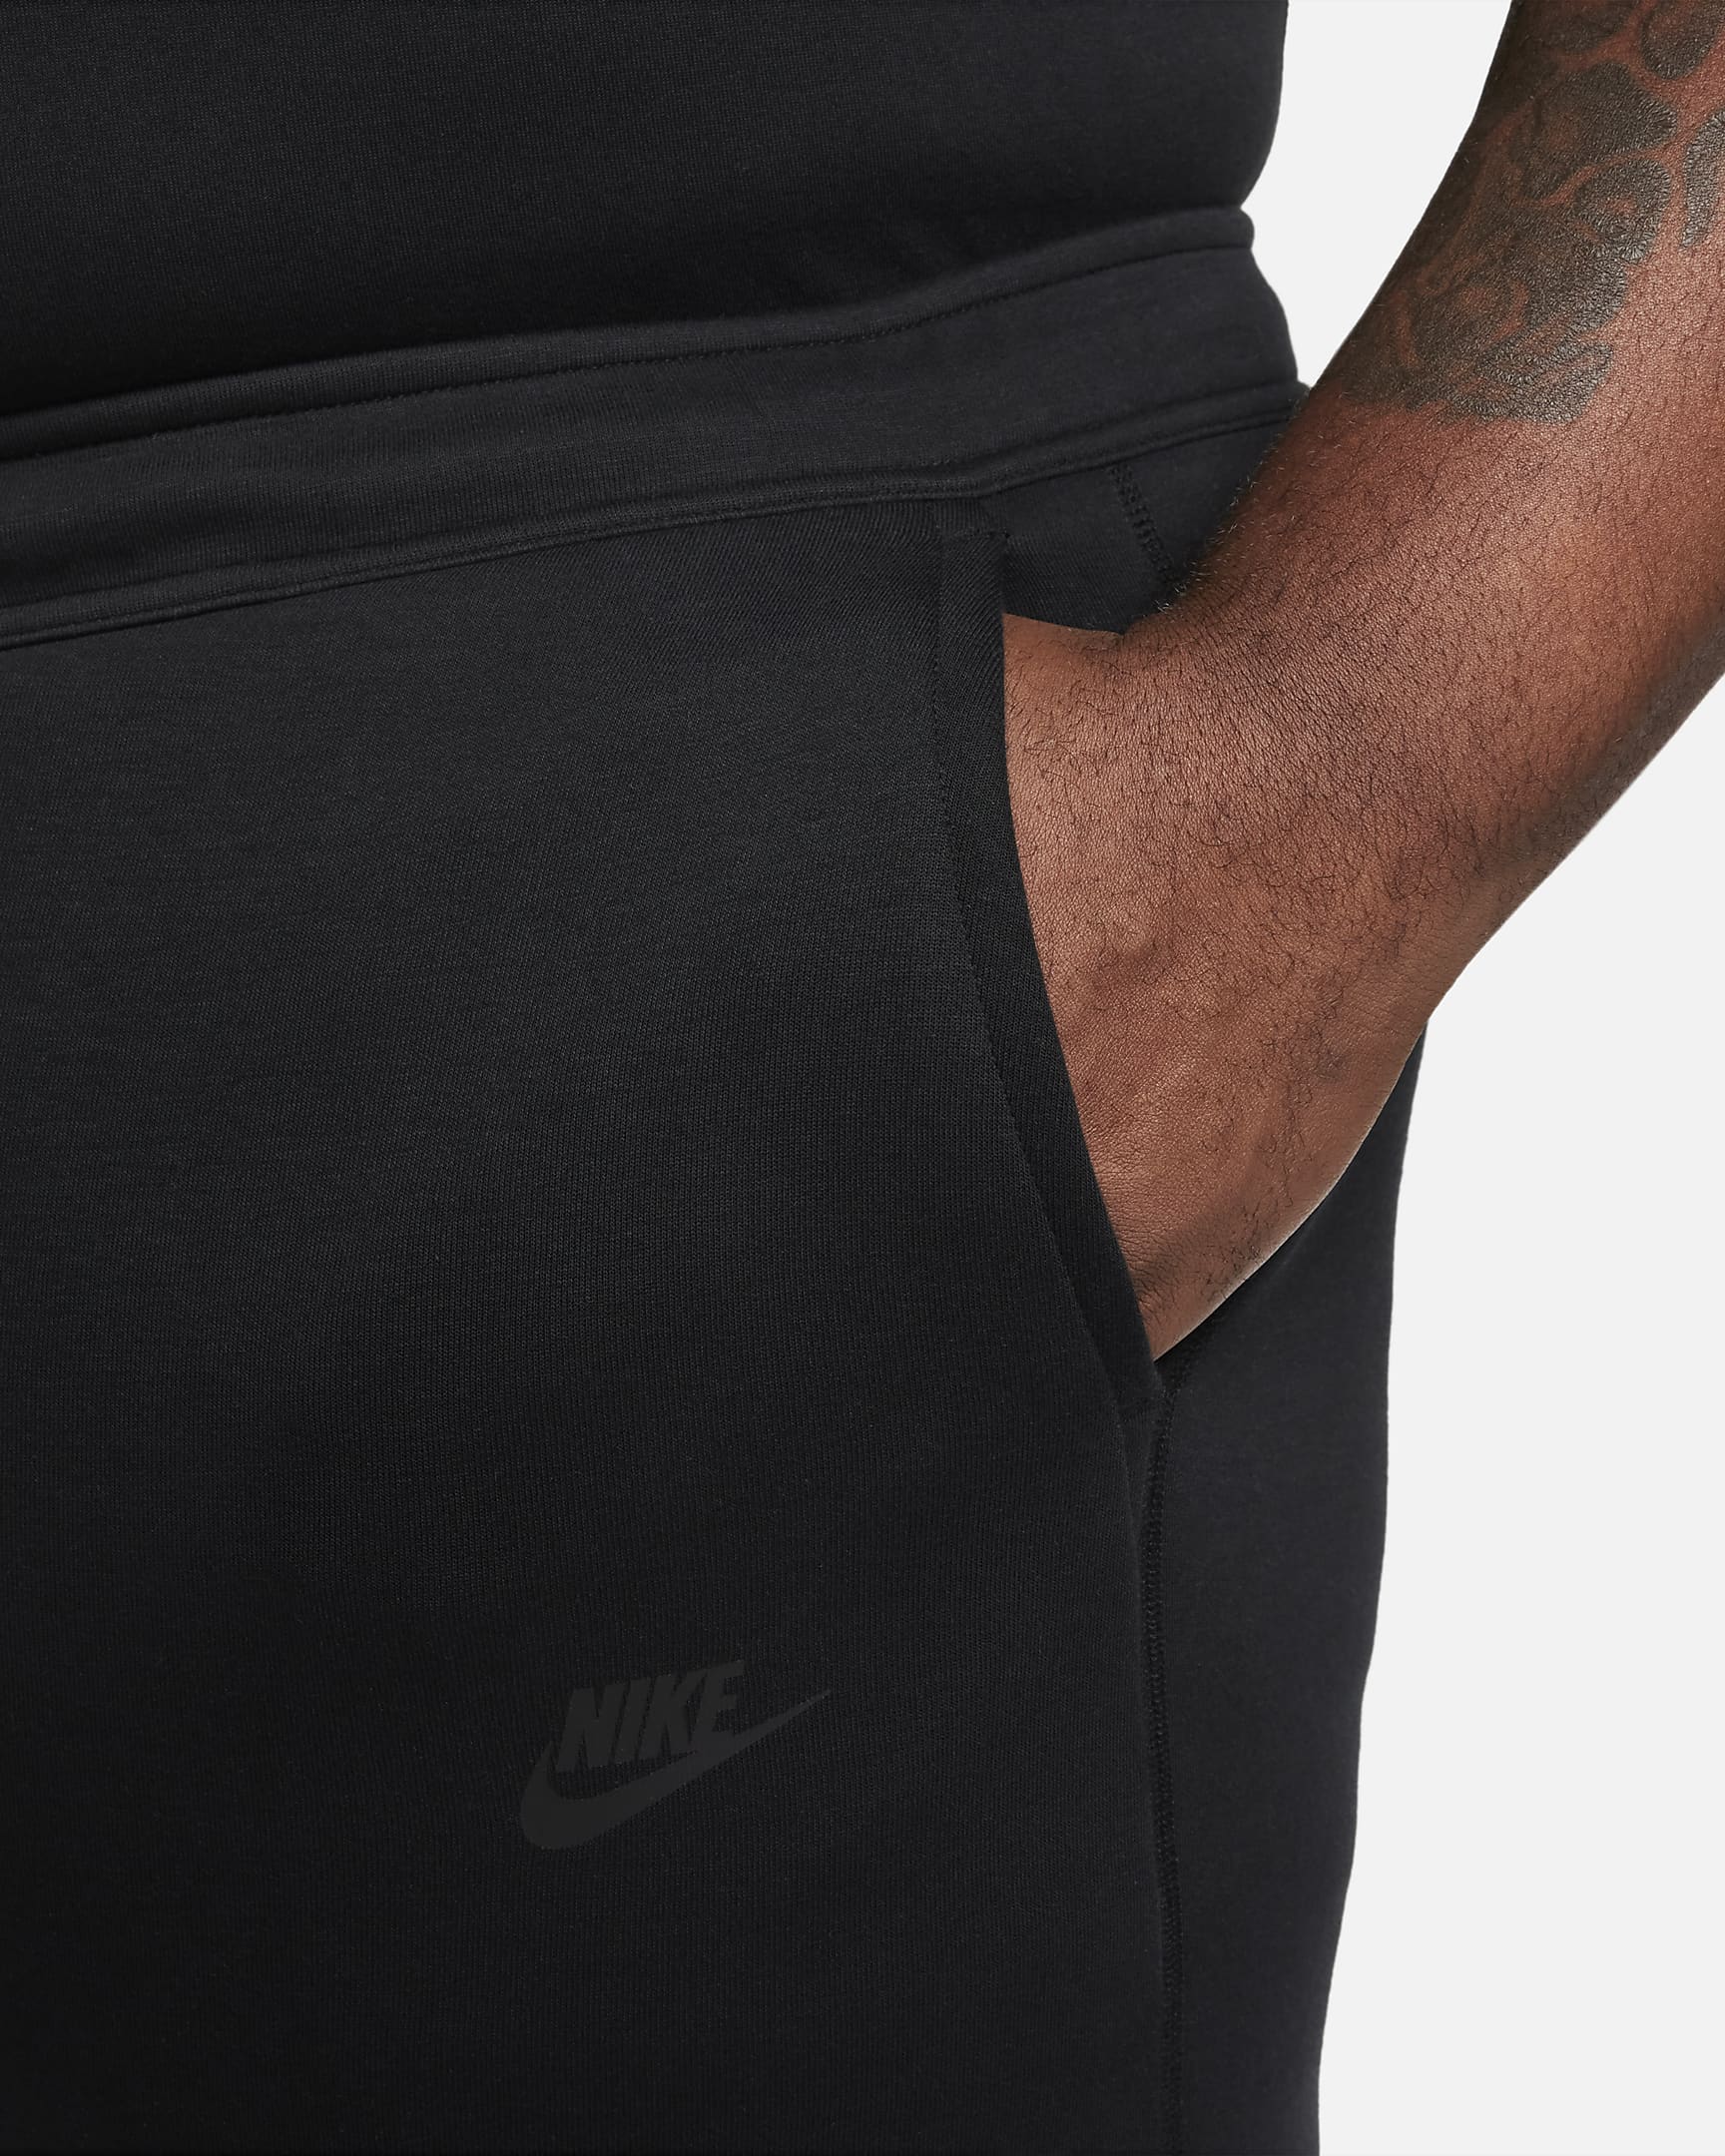 Nike Sportswear Tech Fleece Men's Joggers - Black/Black